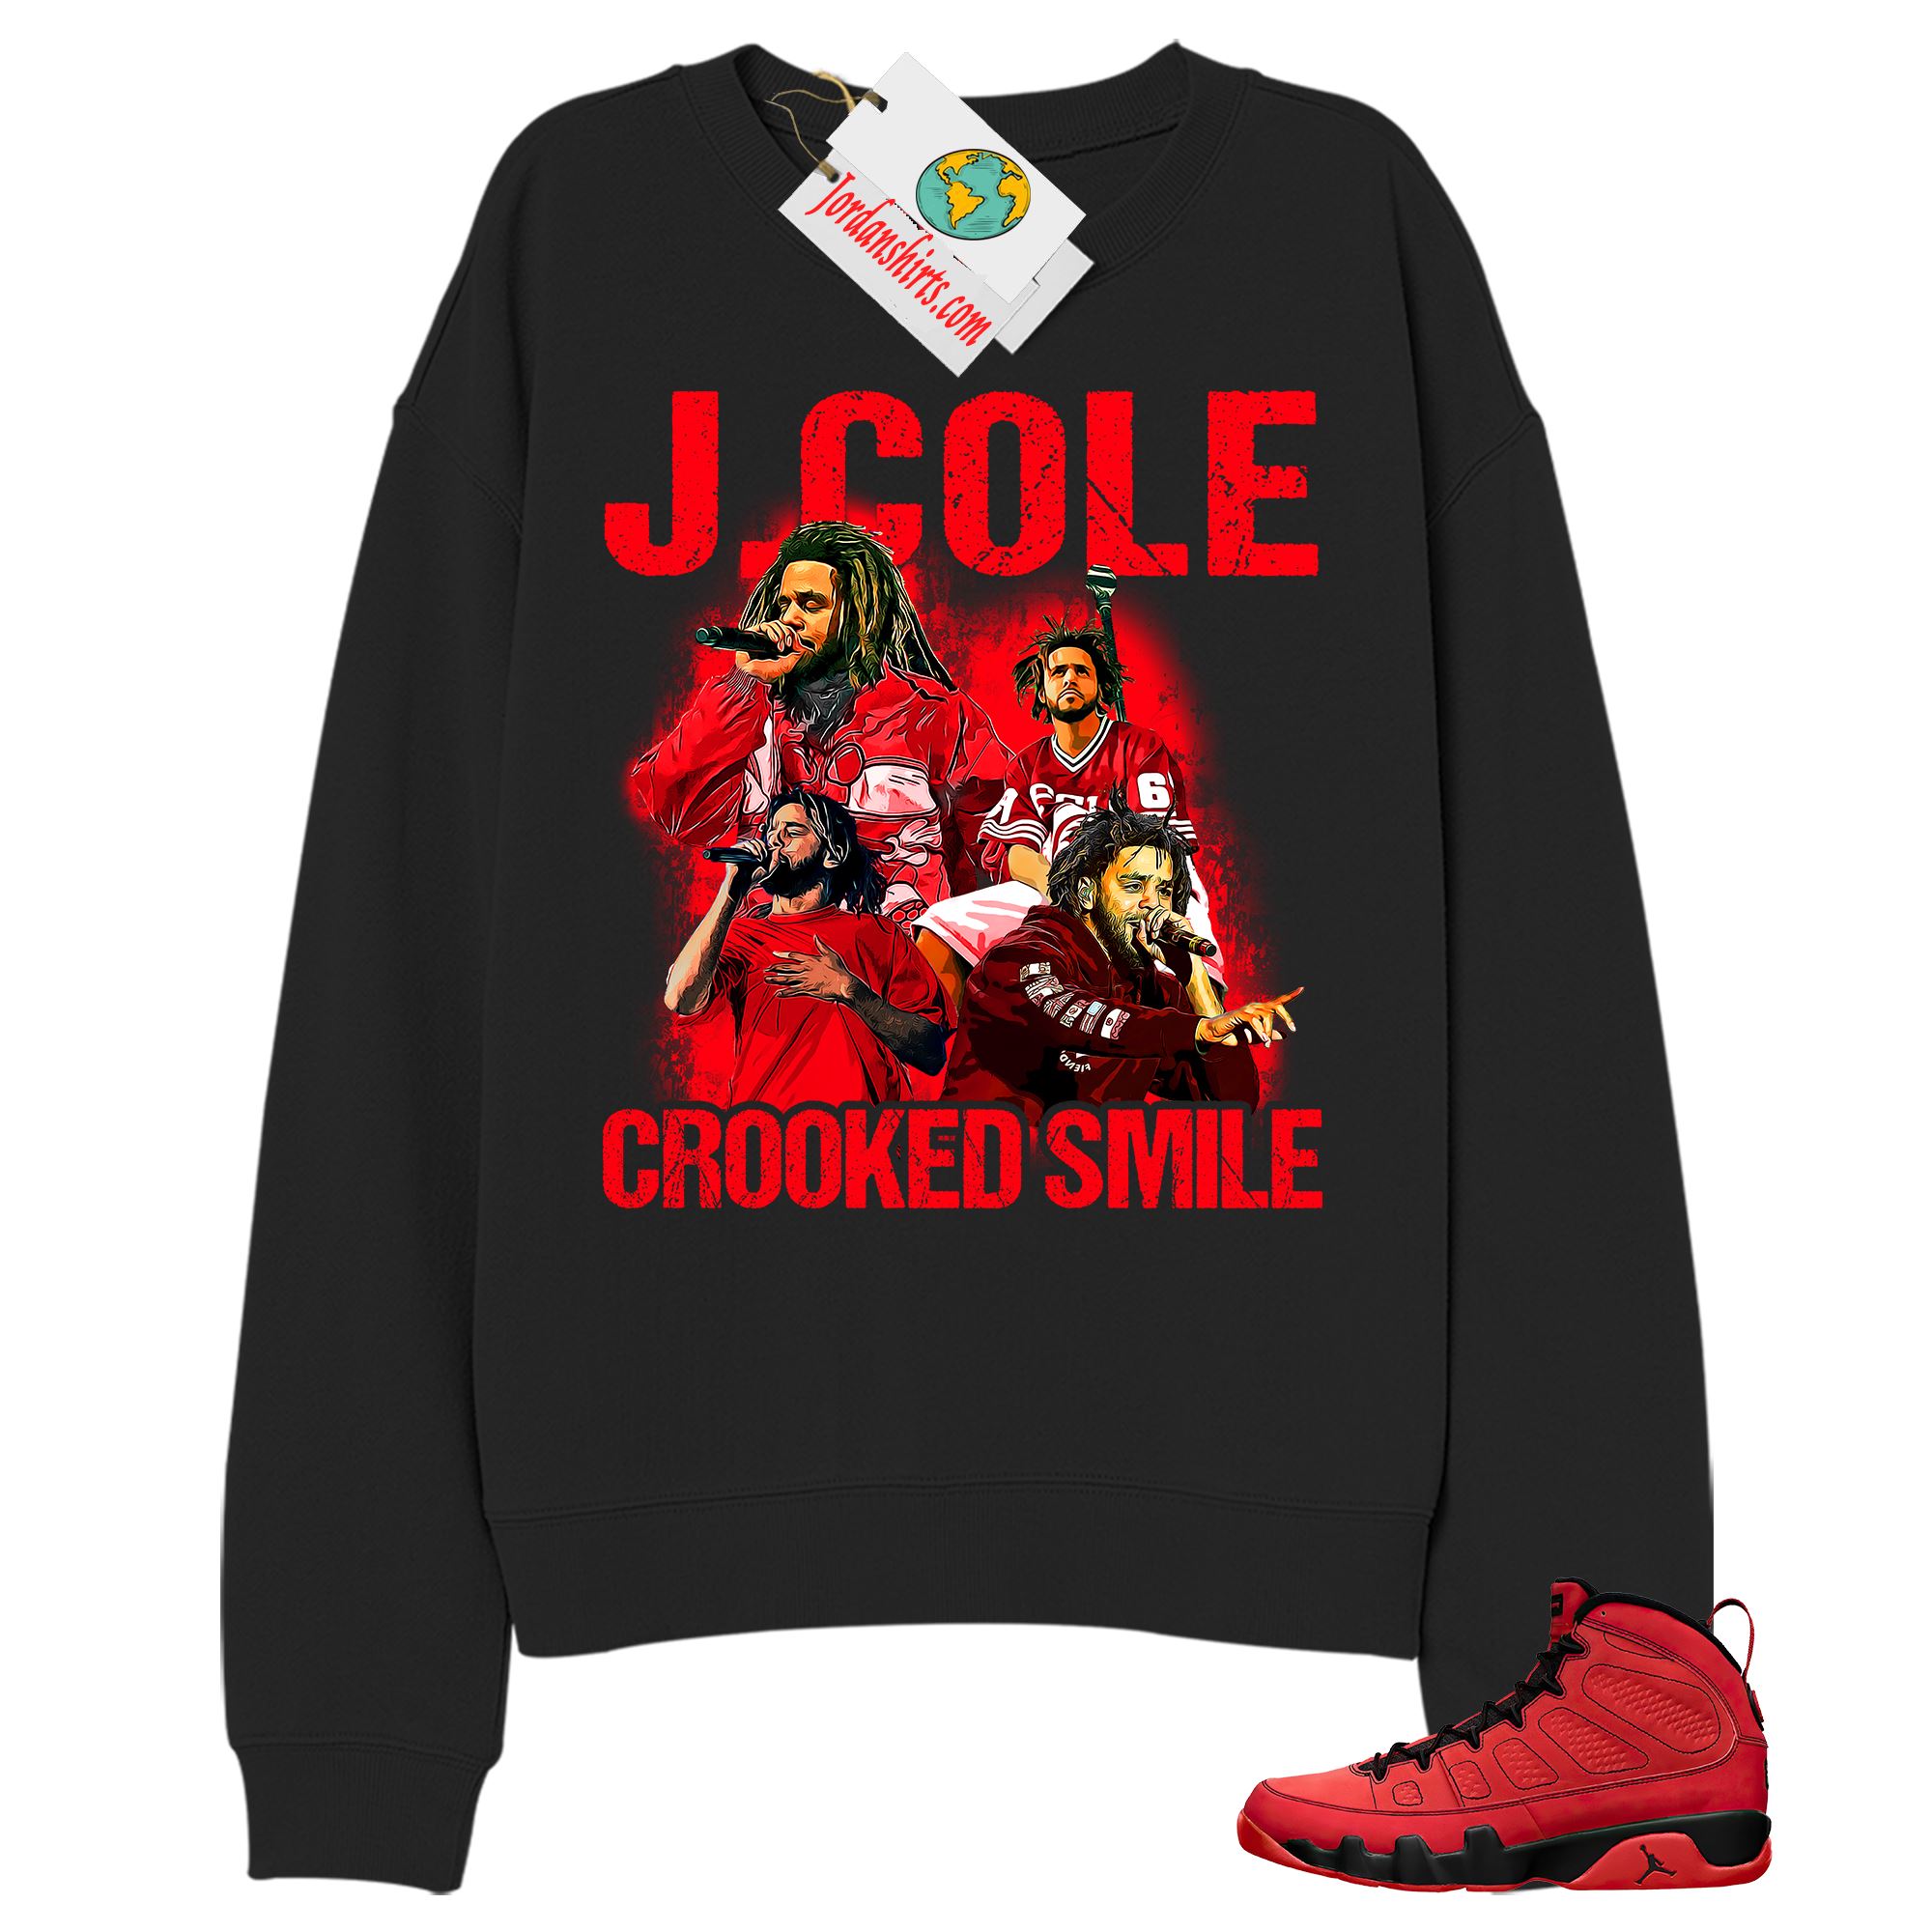 Jordan 9 Sweatshirt, J Cole Bootleg Vintage Raptee Black Sweatshirt Air Jordan 9 Chile Red 9s Full Size Up To 5xl